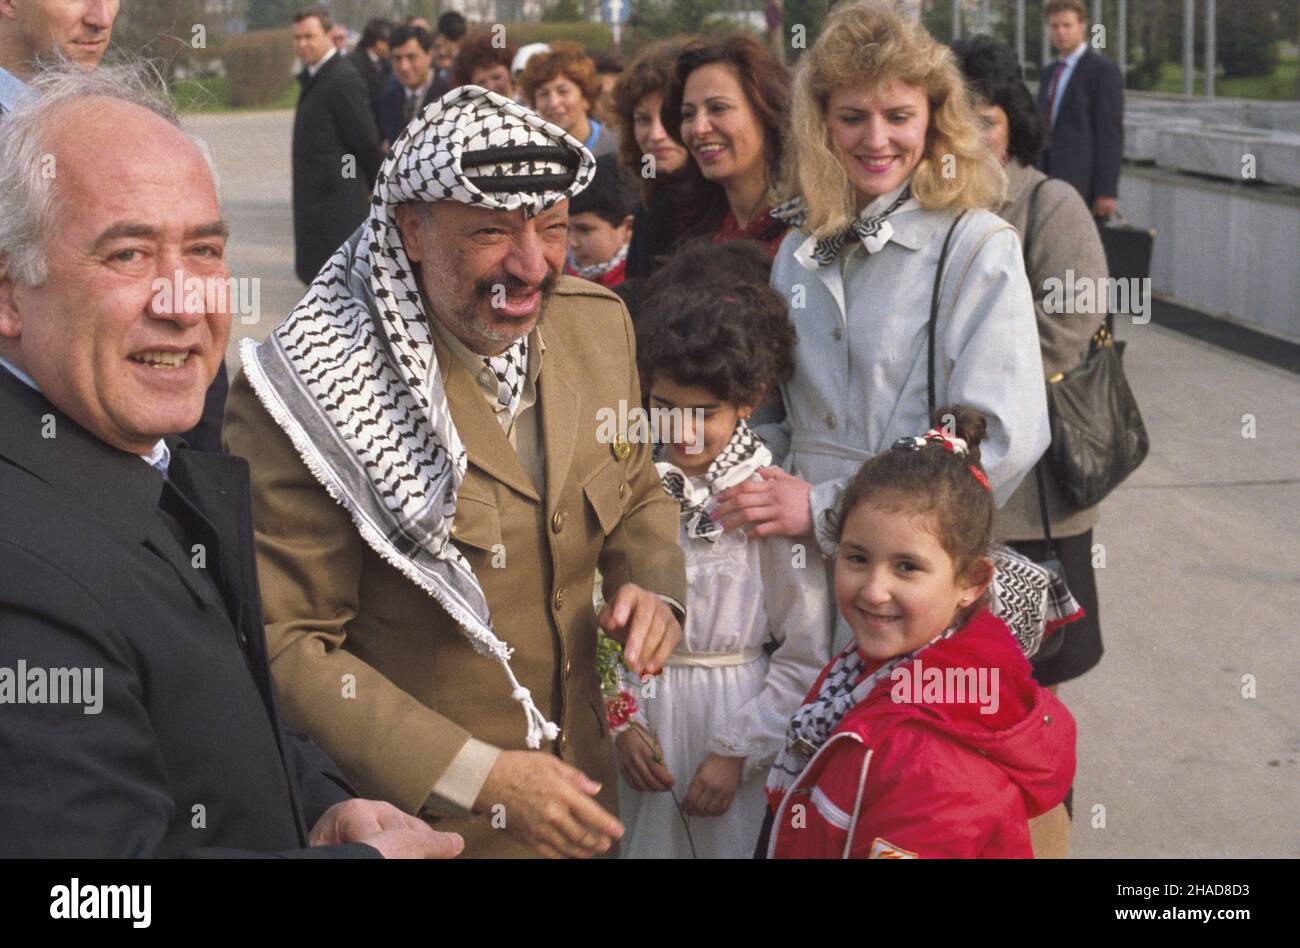 Warszawa 10.04.1989. Wizyta przywódcy Organizacji Wyzwolenia Palestyny Jasera Arafata (C) w Polsce (10-11.04.1989). Powitanie na lotnisku Okêcie. ka  PAP/Jan Bogacz         Warsaw, 10 April 1989. Chairman of the Palestine Liberation Organization Yasser Arafat (in the foreground) visits Poland (April 10-11, 1989). A welcoming ceremony at the Okecie airport.   ka  PAP/Jan Bogacz Stock Photo